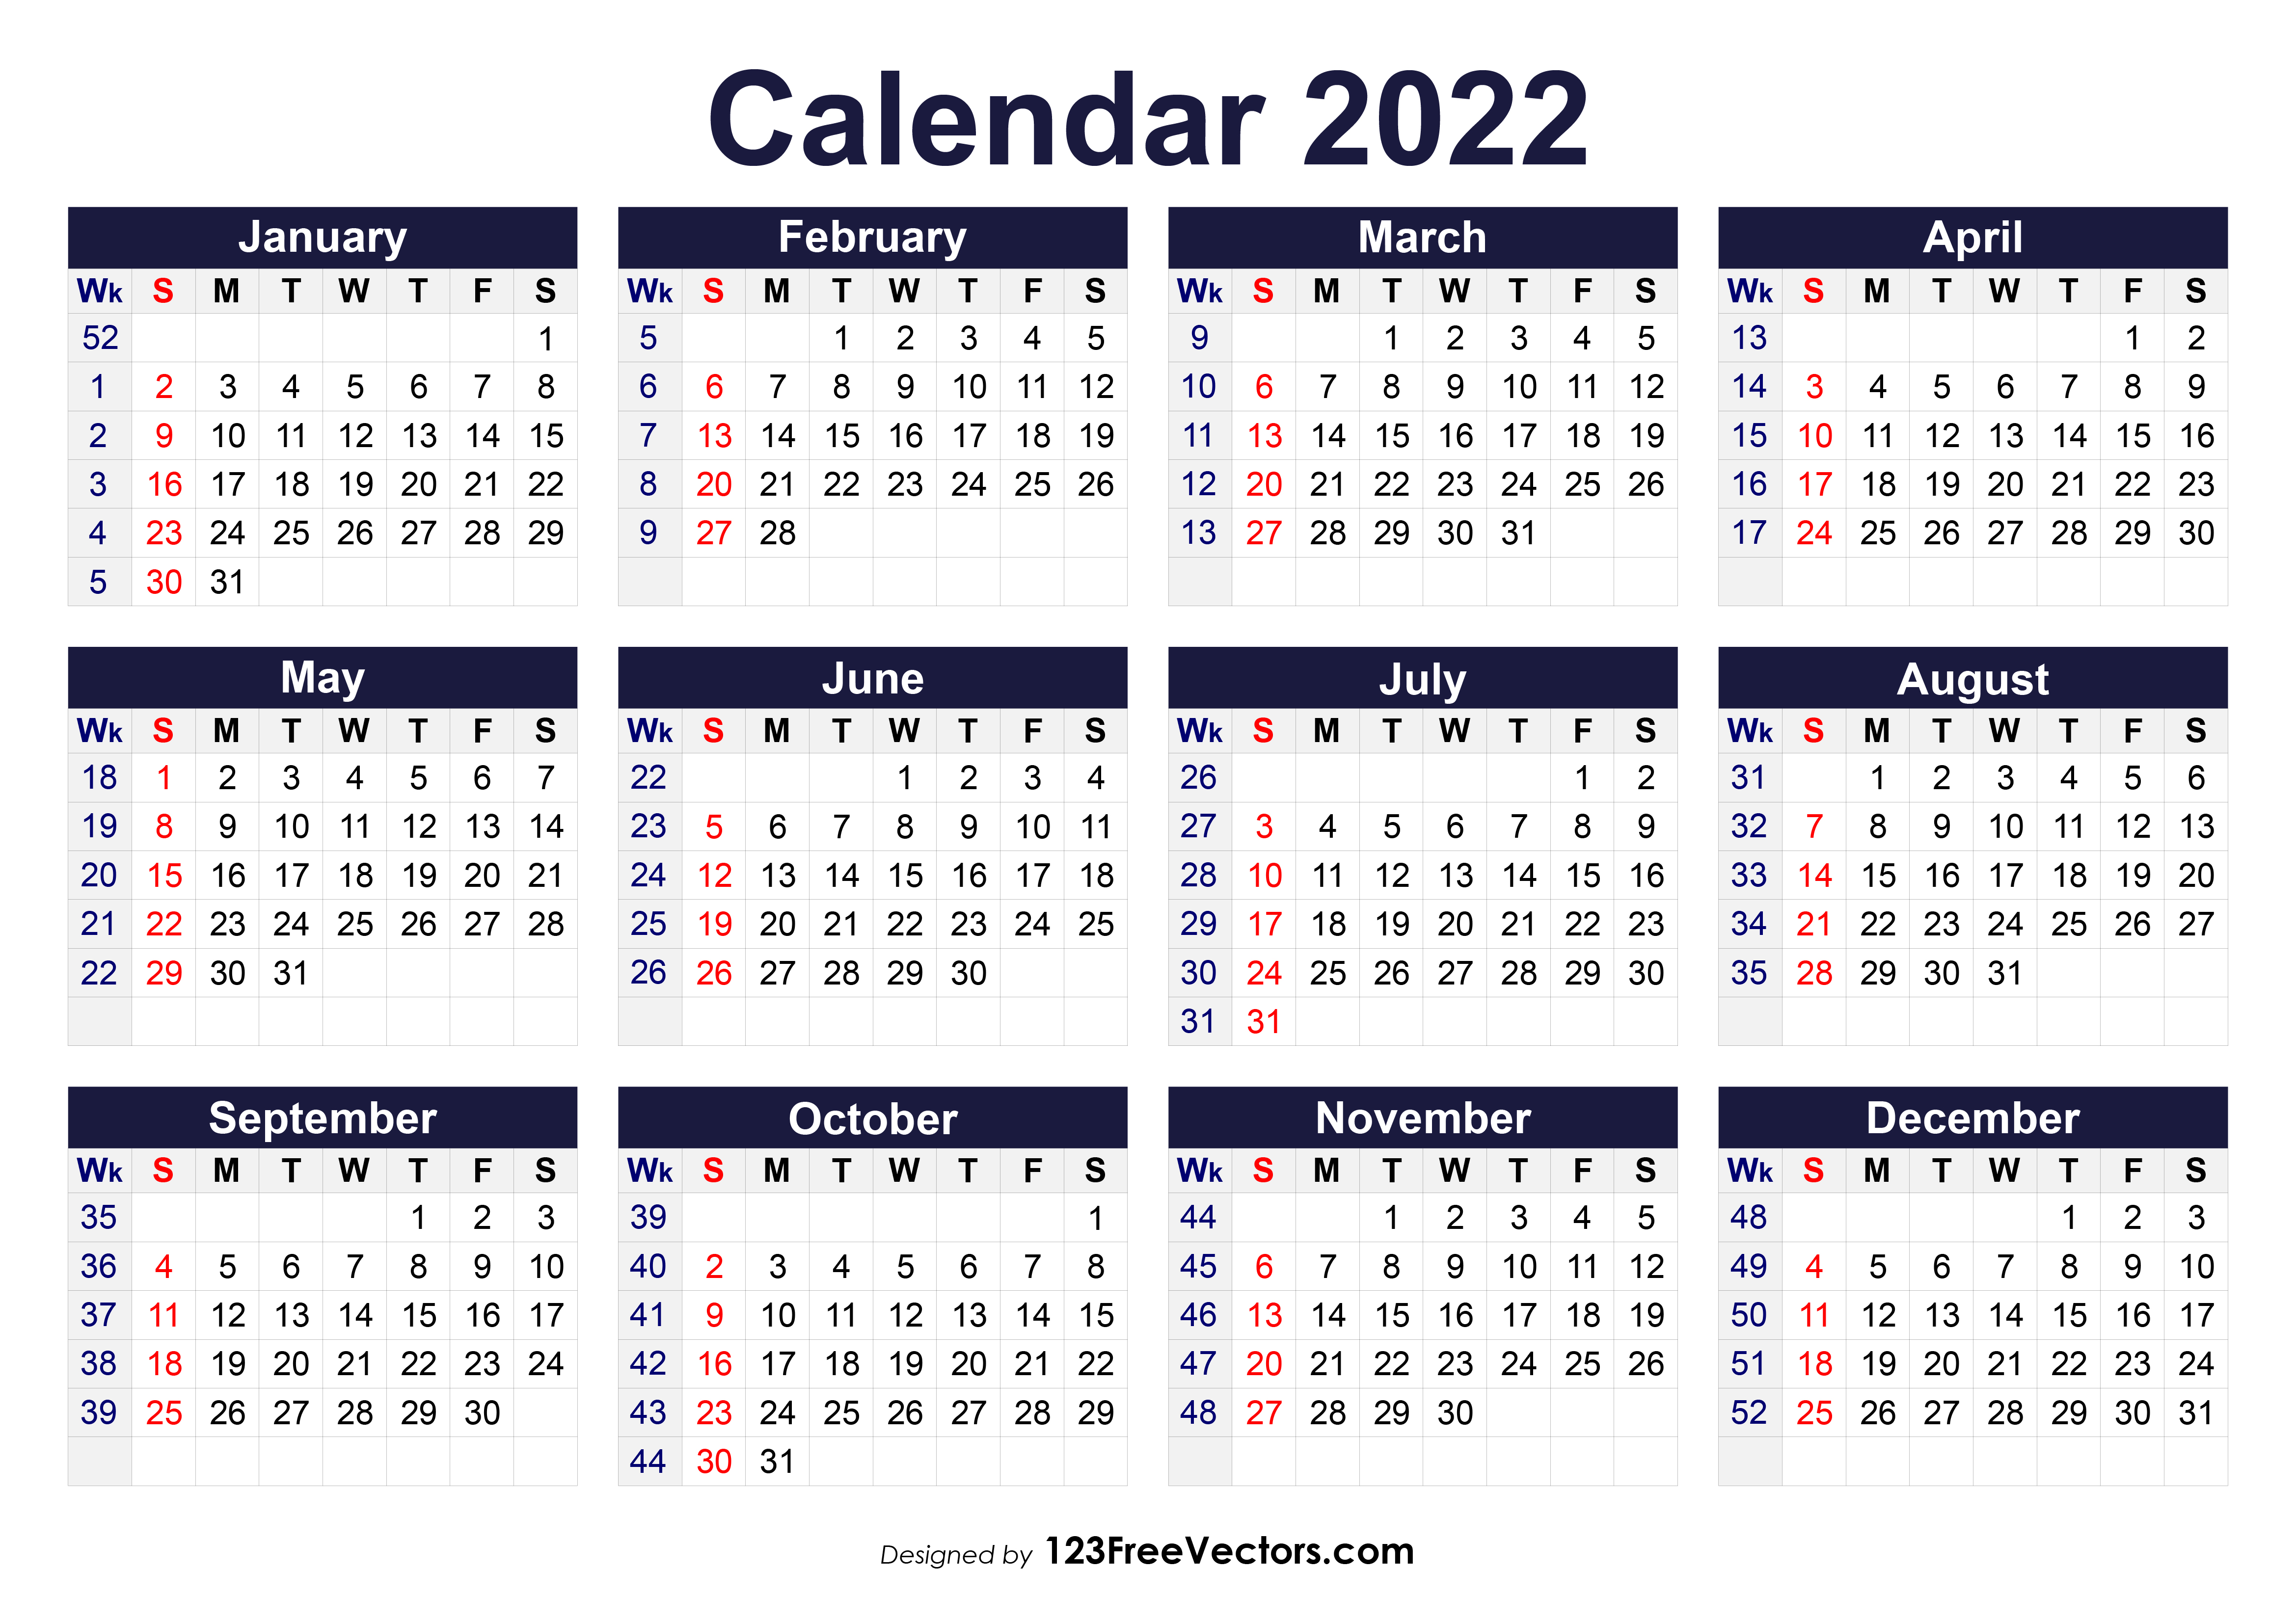 Free Calendar Printable 2022 Free Printable 2022 Calendar With Week Numbers